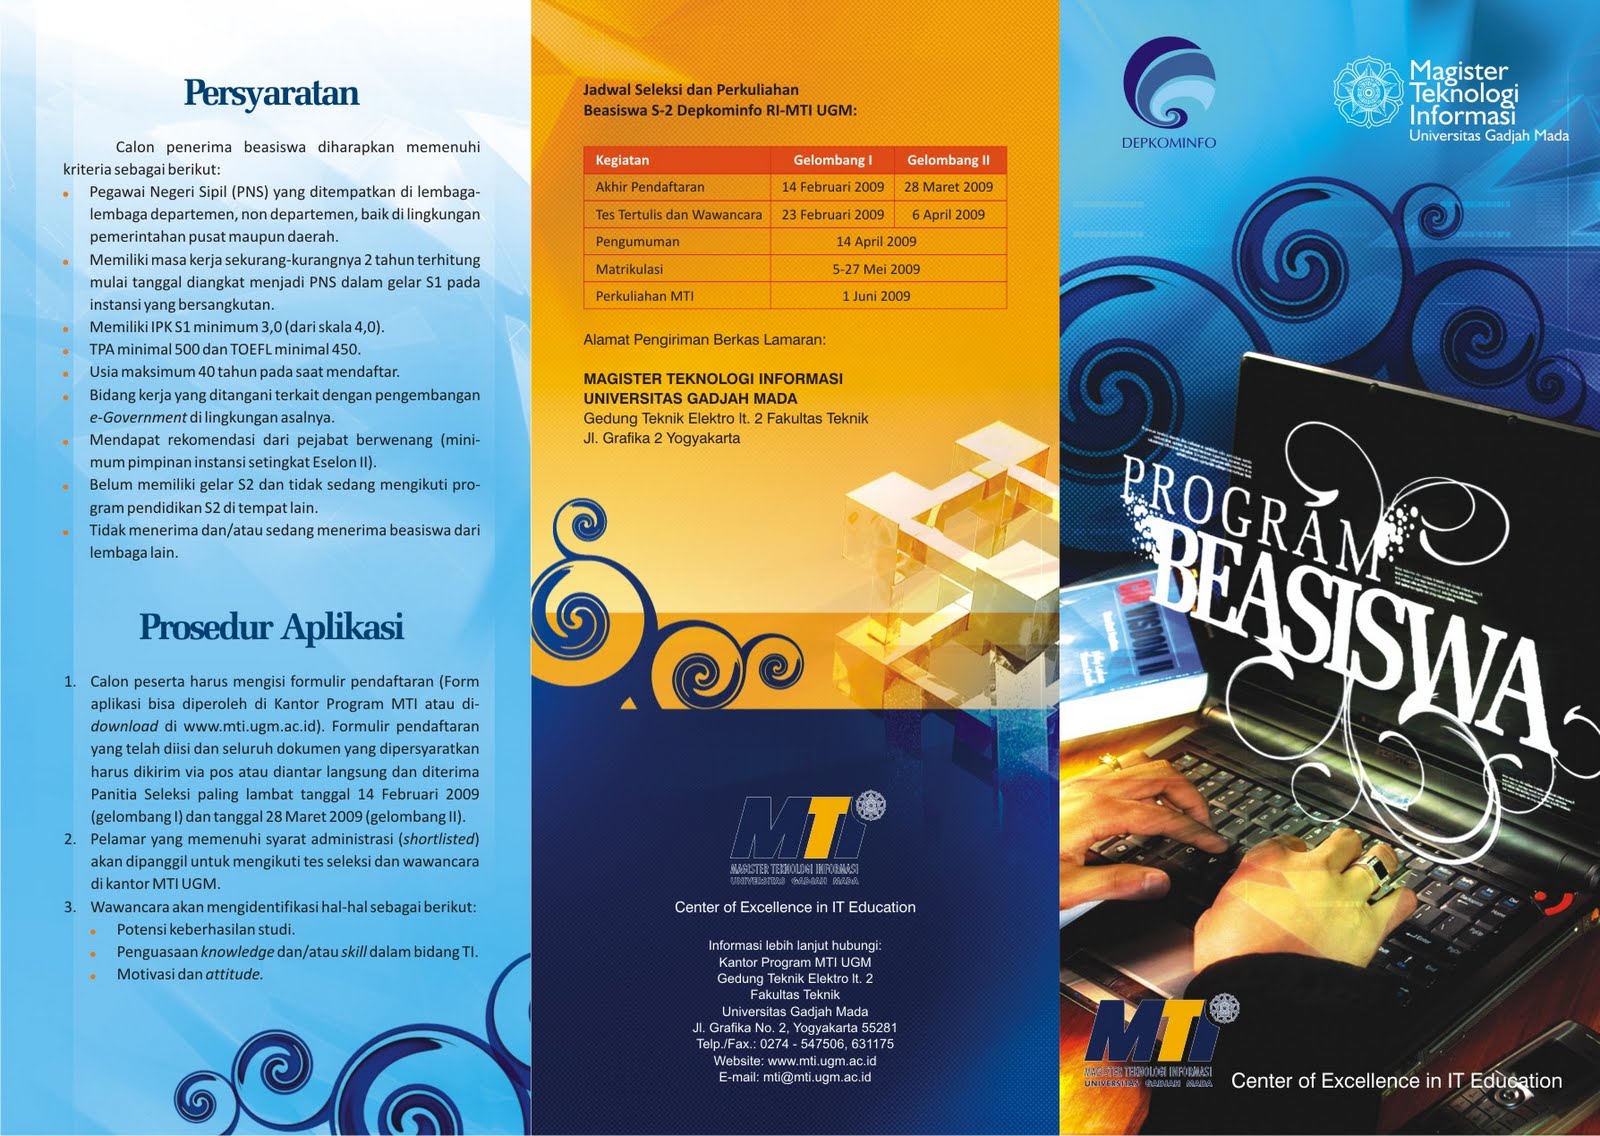 Contoh desain leaflet, brosur, dan poster:According Blog